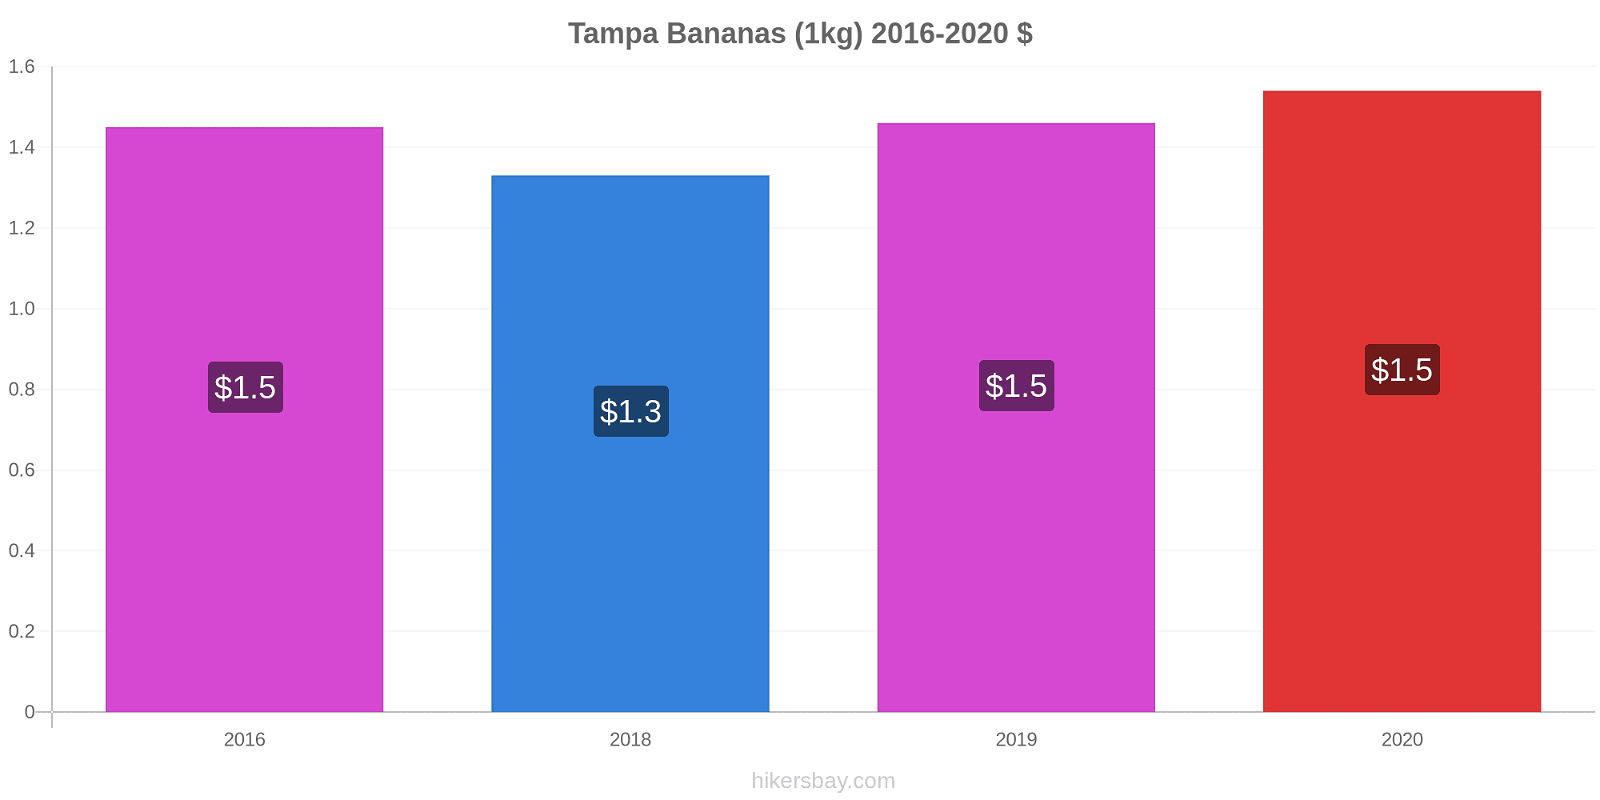 Tampa variação de preço Banana (1kg) hikersbay.com